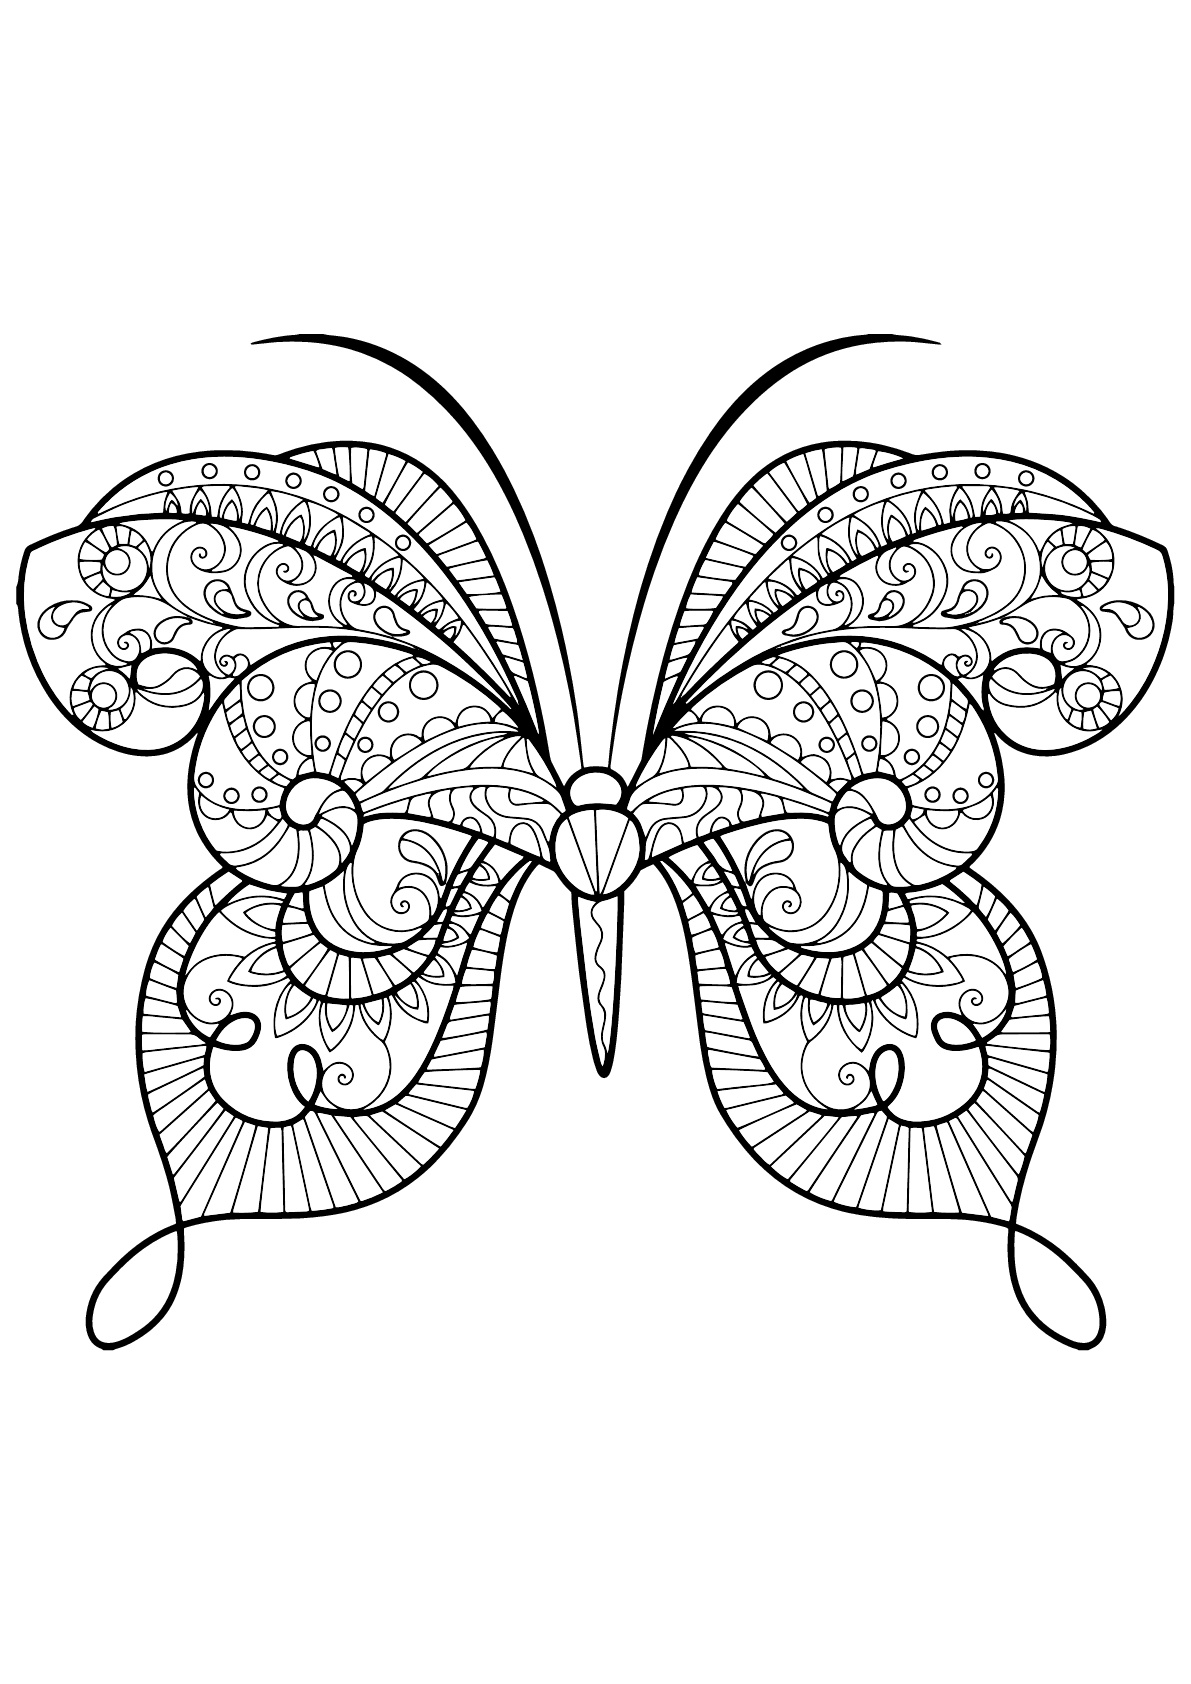 Mariposa con bellos e intrincados dibujos - 15